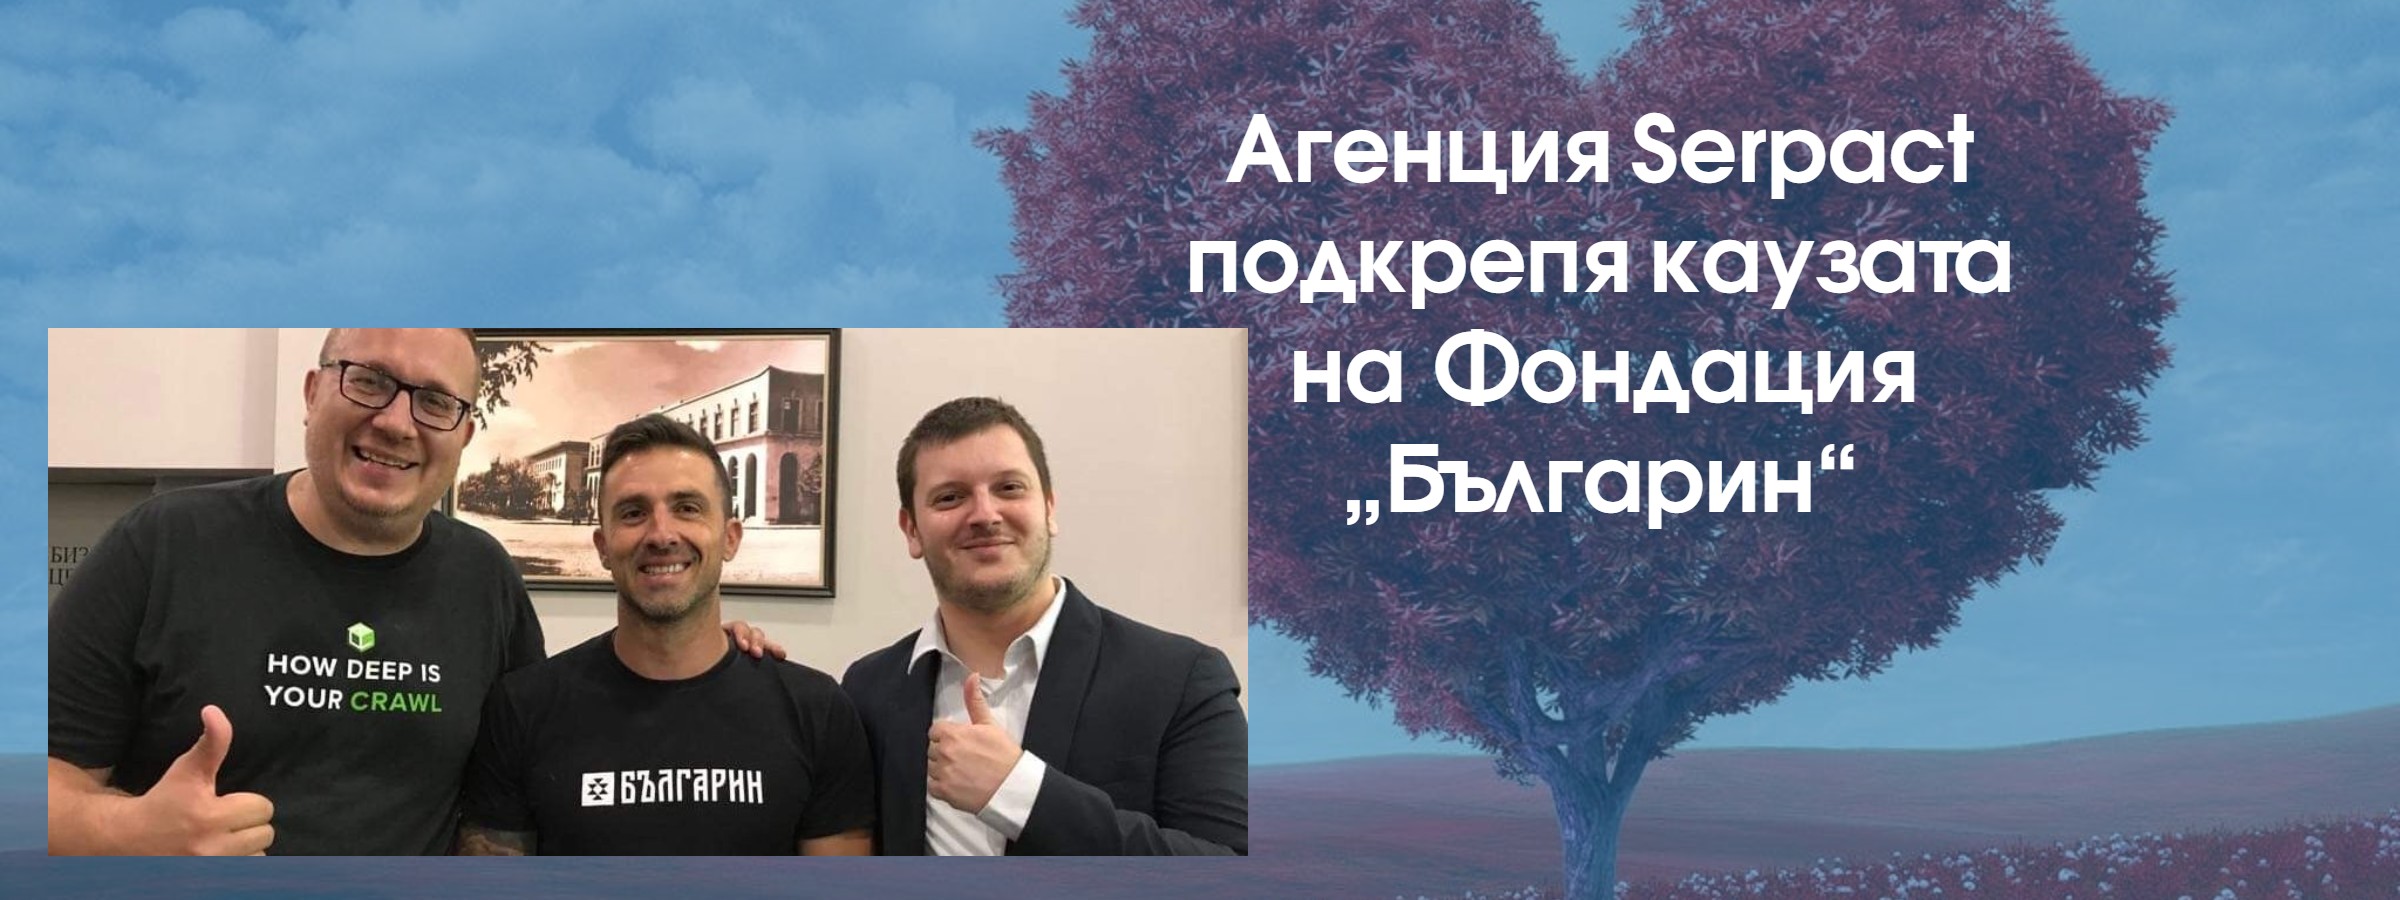 Агенция Serpact подкрепя каузата на Фондация „Българин“